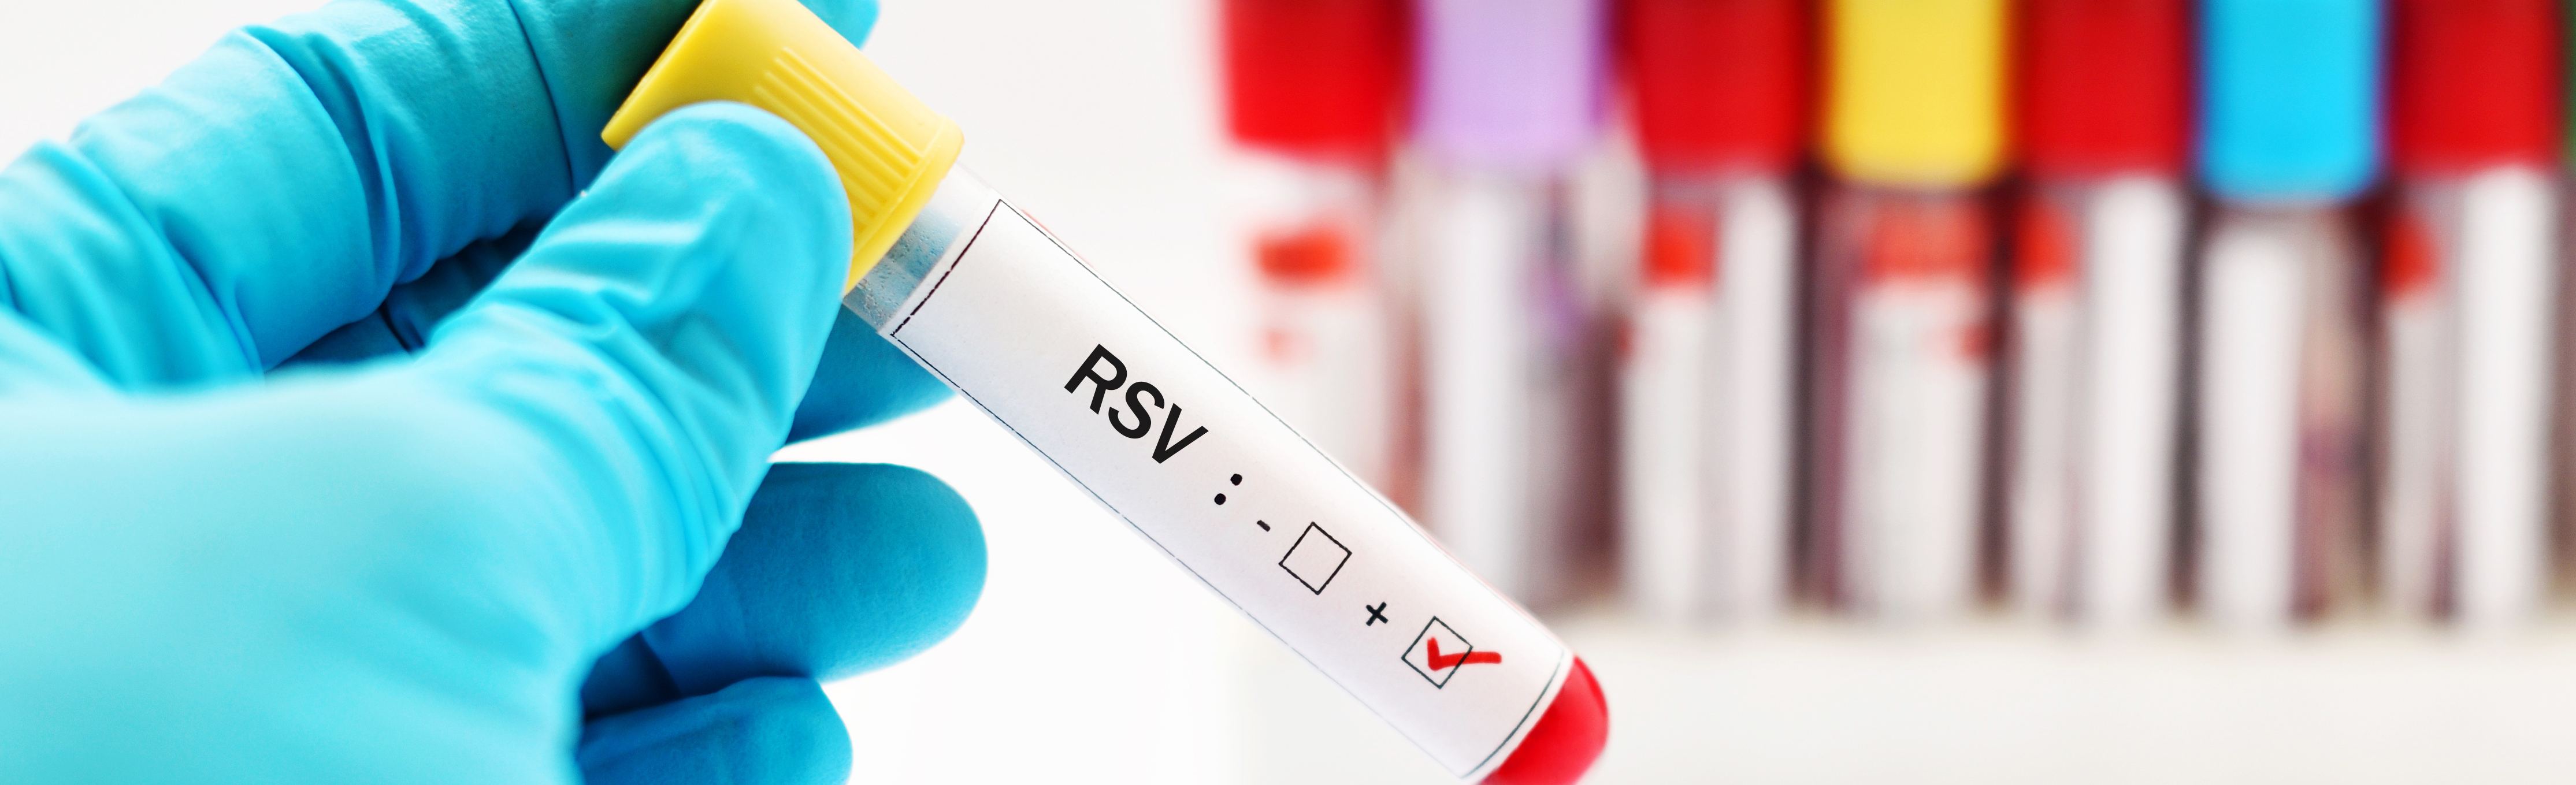 Gloved hand holding sample vial labeled "RSV"